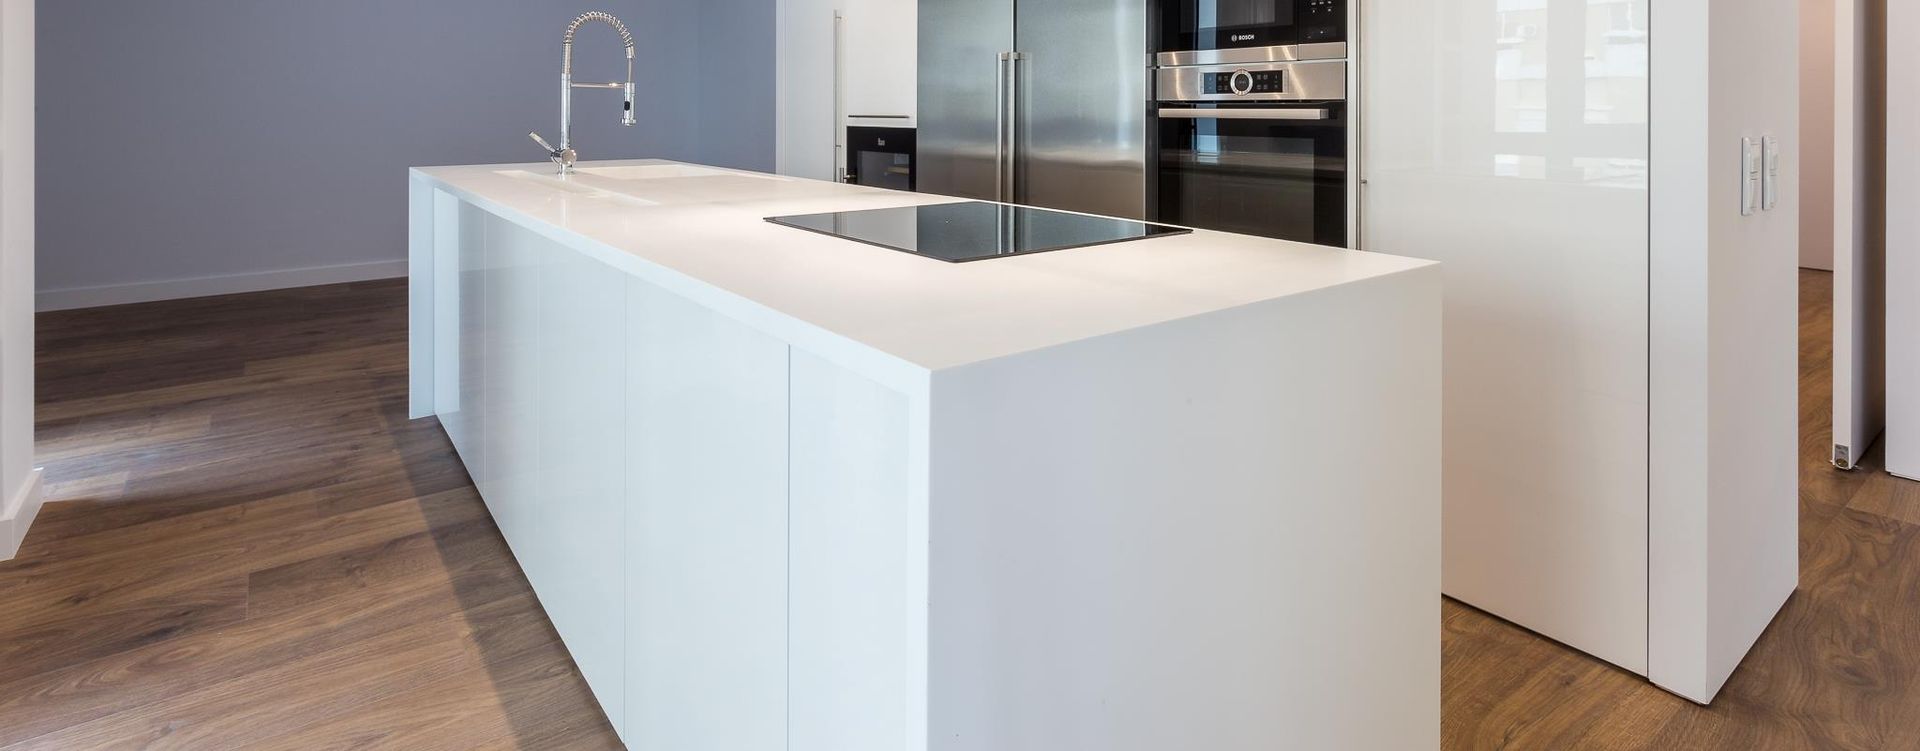 Projeto de cozinha com chão em mdadeira, DIONI Home Design DIONI Home Design Cocinas de estilo moderno Tablero DM Estanterías y gavetas